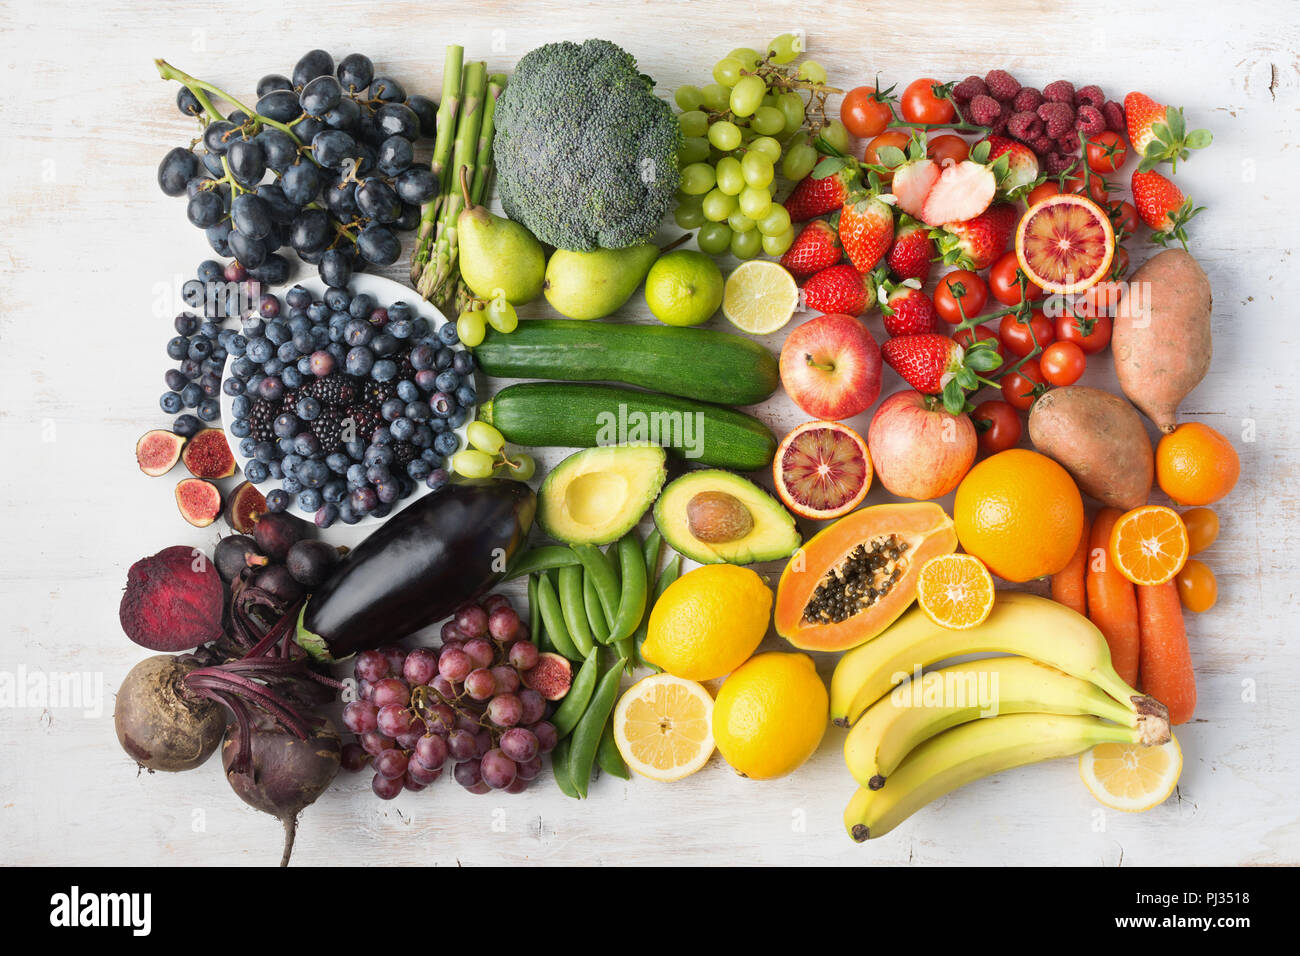 Gesunde Ernährung Konzept, Sortiment von Rainbow Obst und Gemüse, Beeren, Bananen, Orangen, Weintrauben, Brokkoli, rote Beete an der aus weissen Tisch in einem Rechteck, Ansicht von oben angeordnet, selektiver Fokus Stockfoto